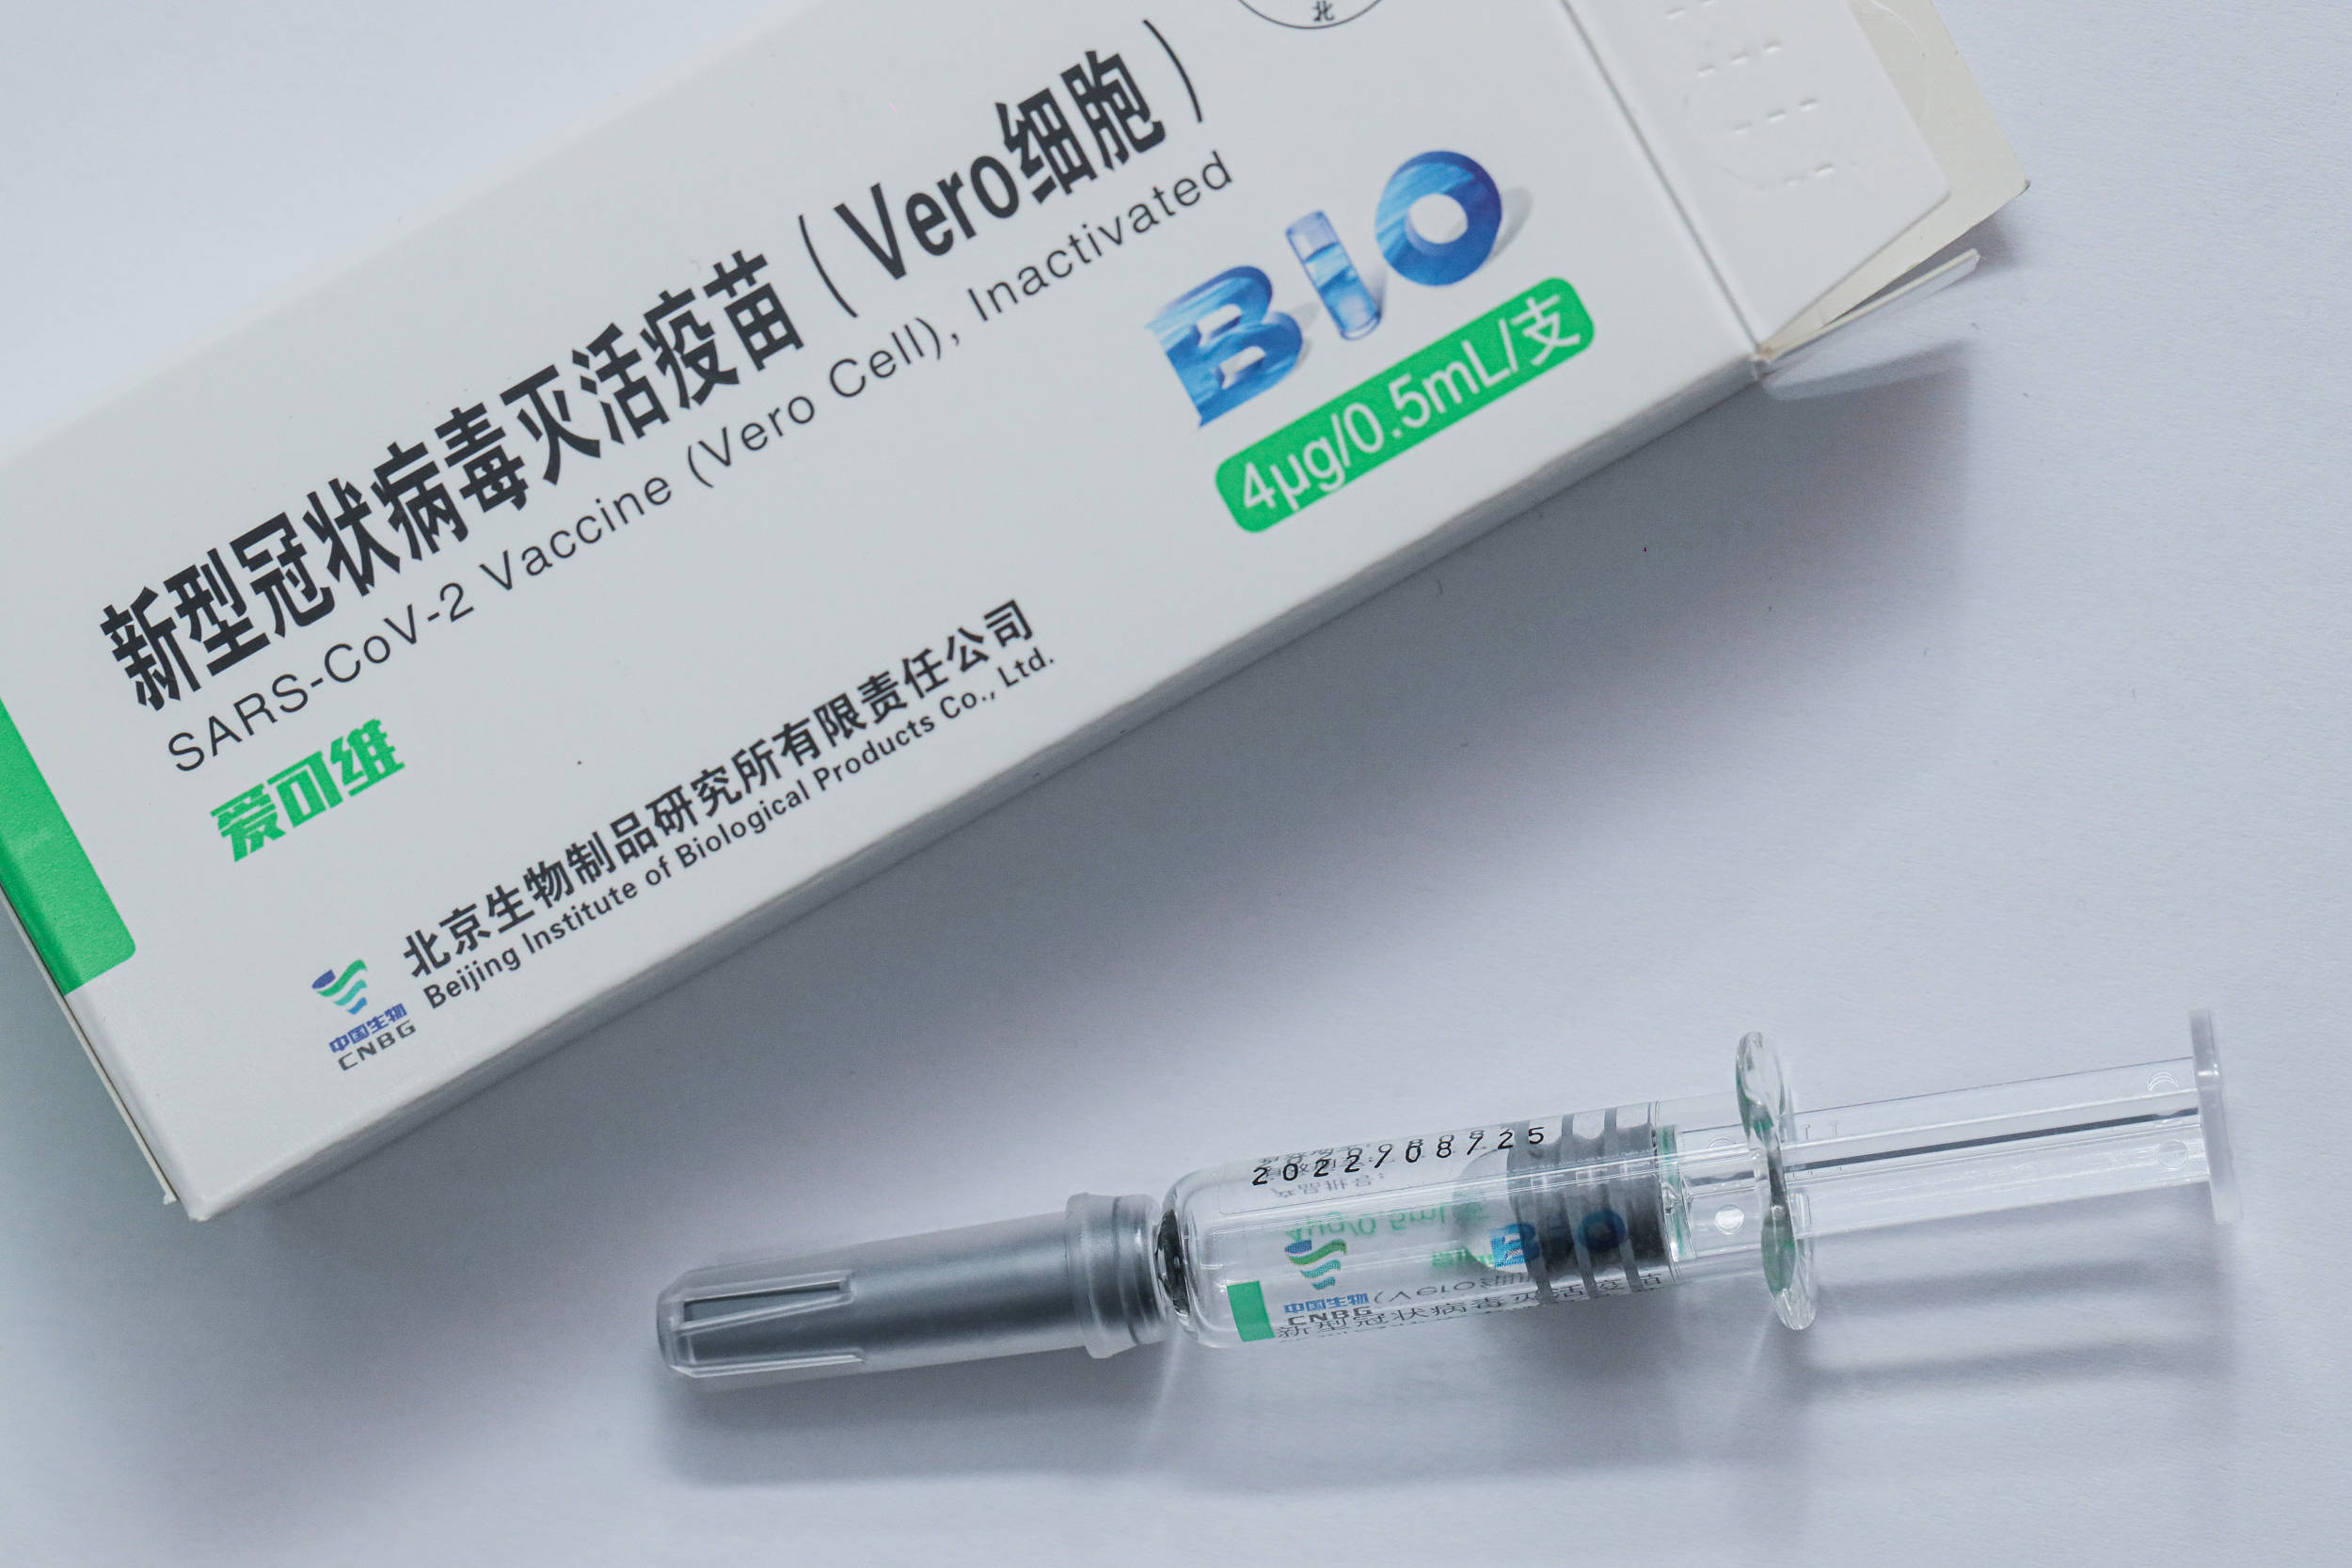 新冠疫苗北京生物图片